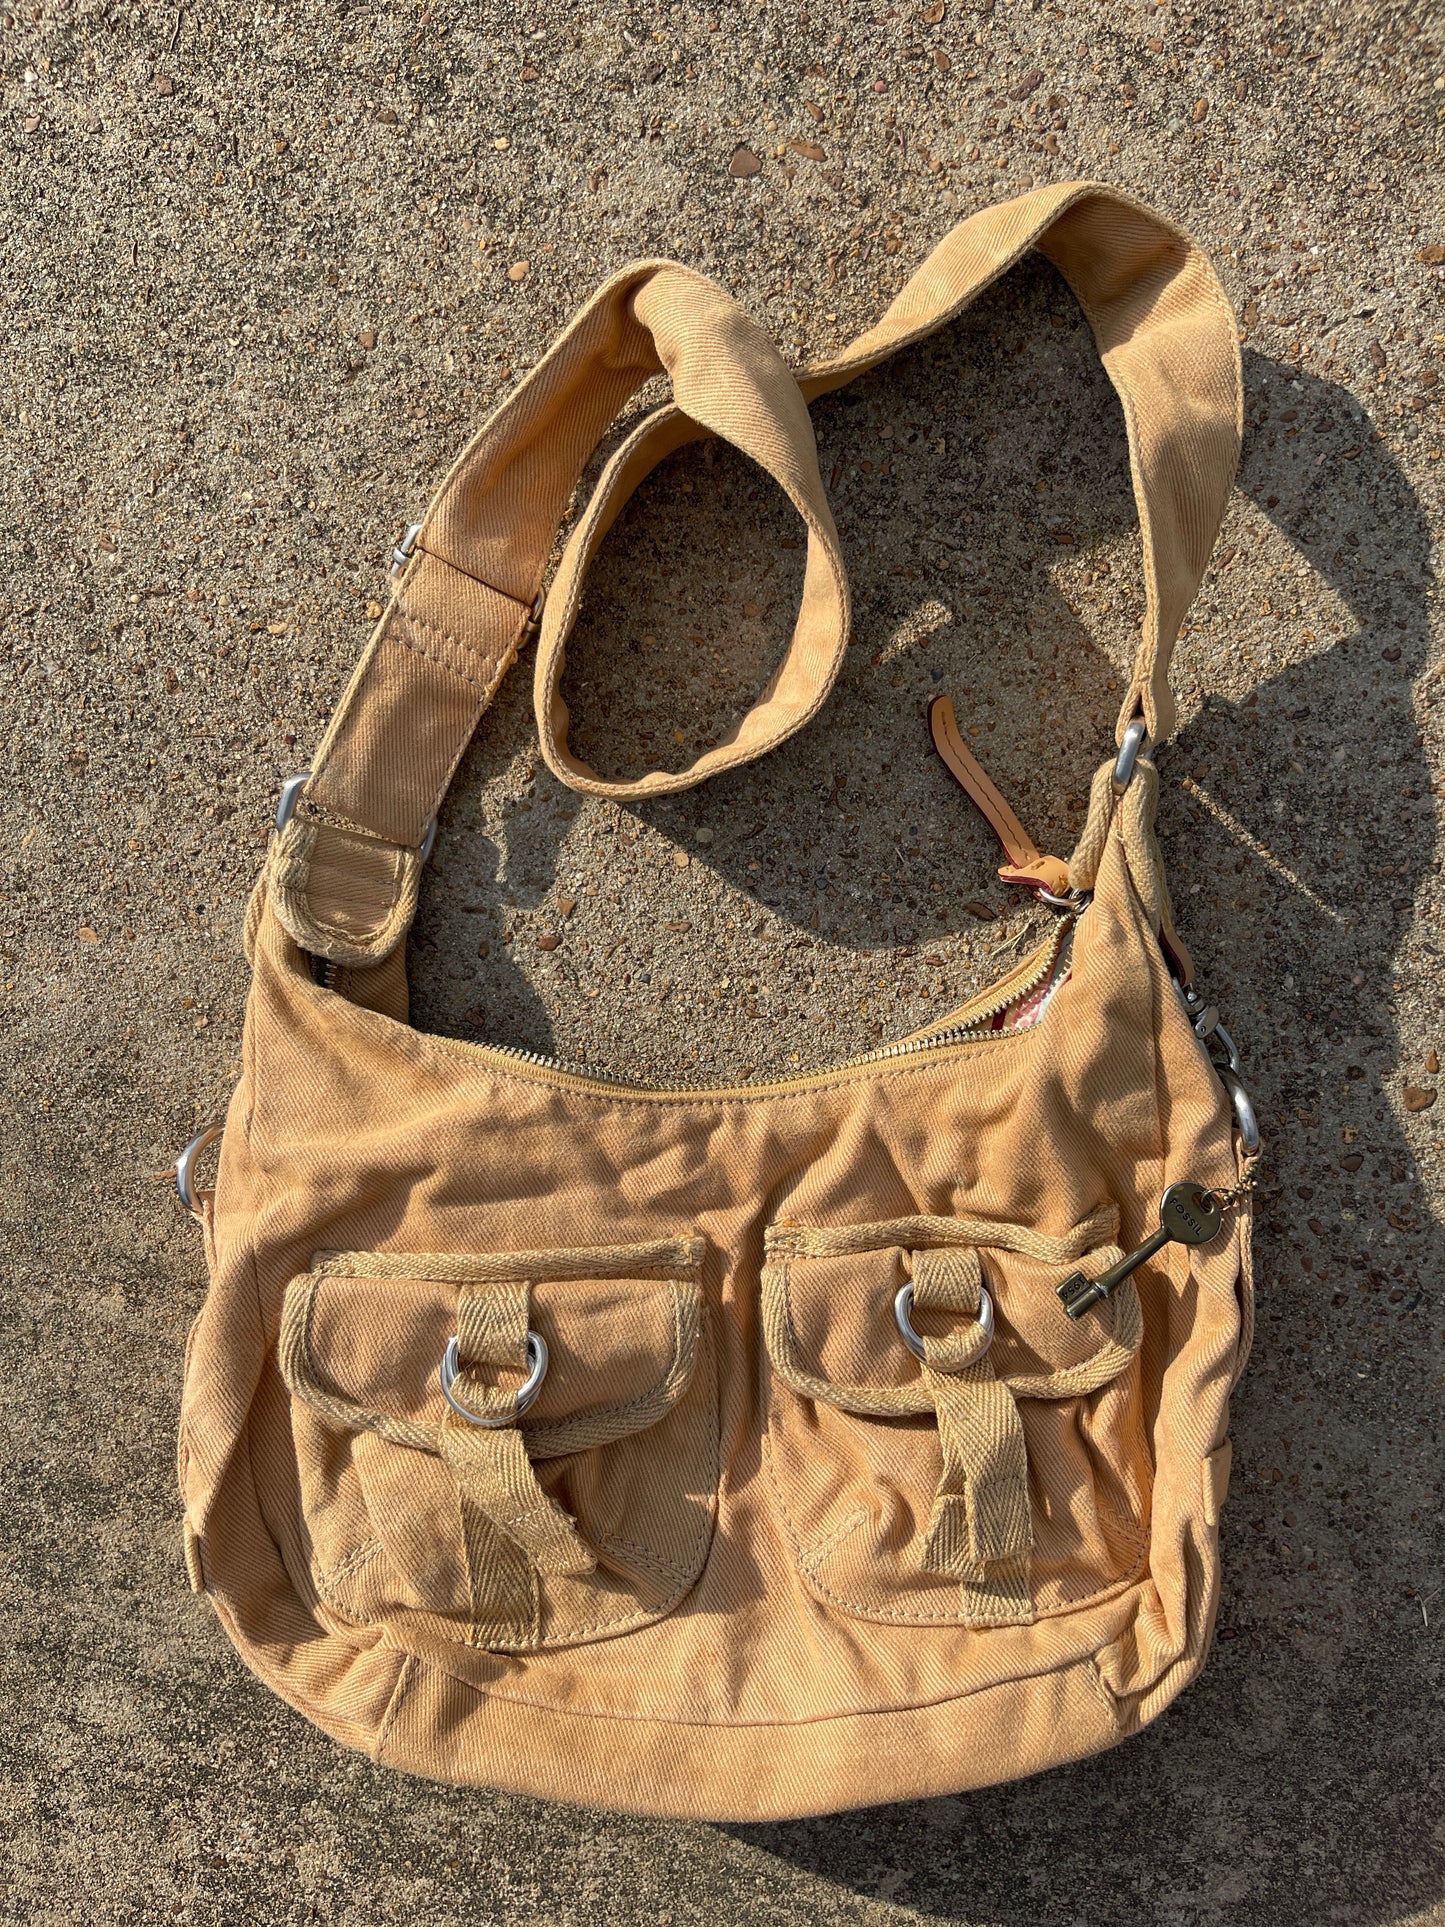 Fossil Brown Crossbody Handbag